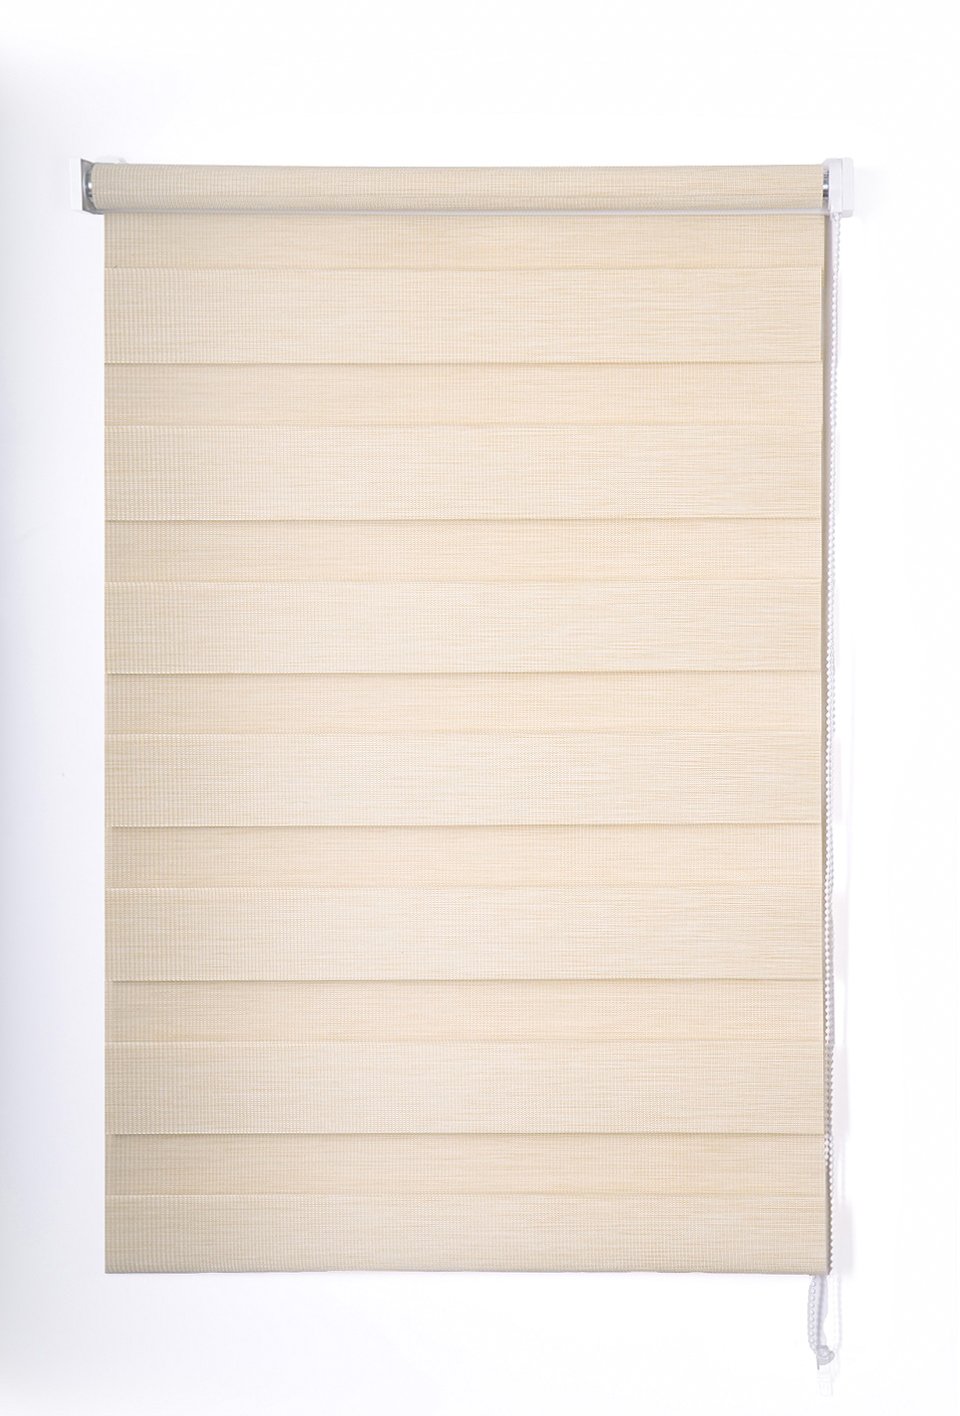 Klasikinė ritininė užuolaida VERONA D&N, smėlio sp., 80 x 170 cm, 100 % poliesteris